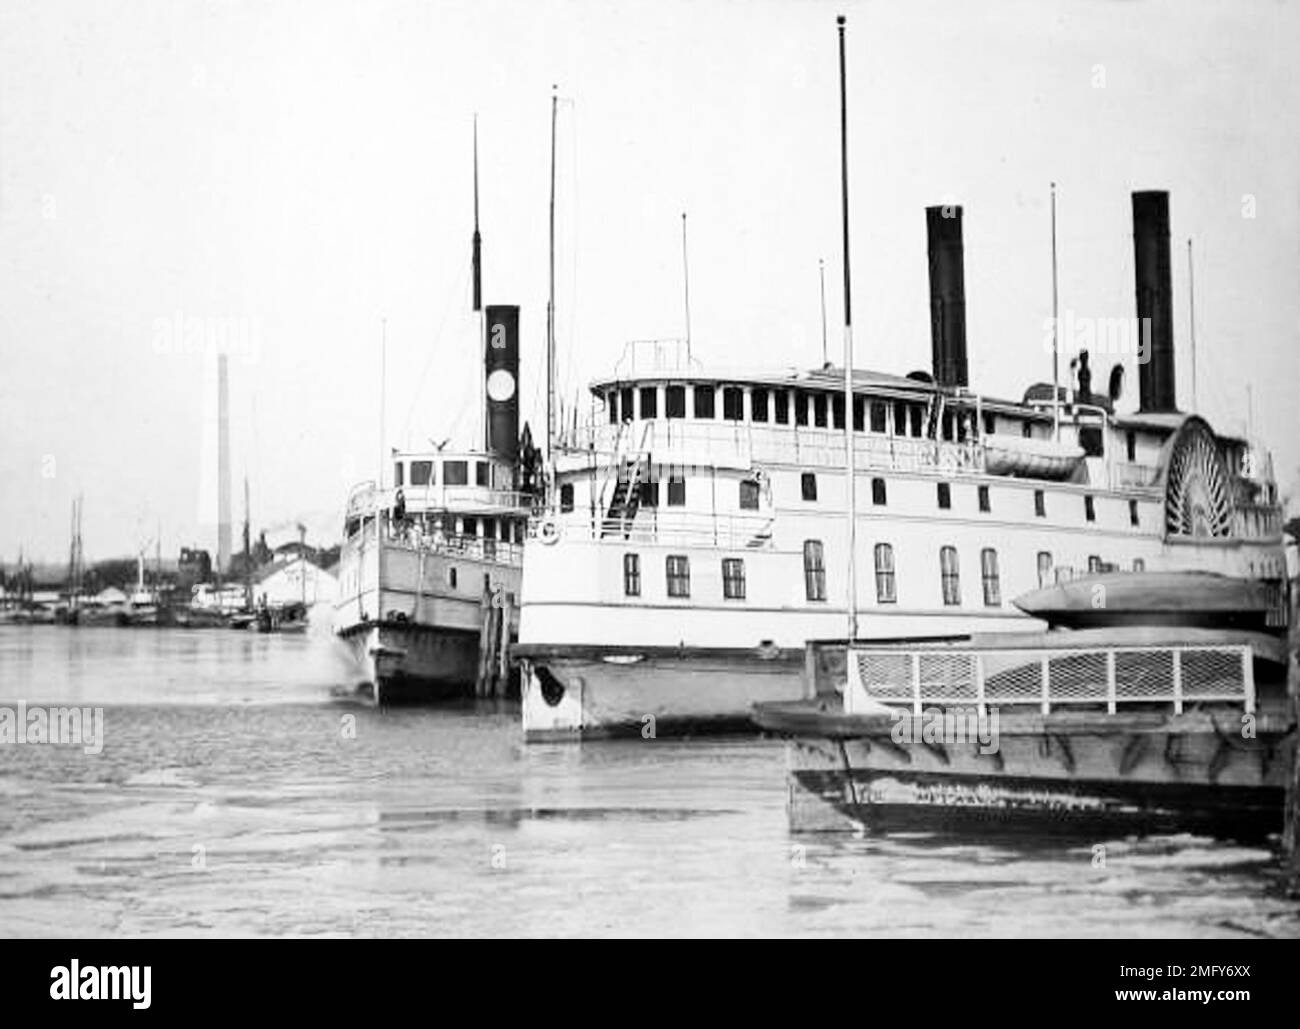 Bateaux à vapeur, rivière Potomac, Washington DC, États-Unis, période victorienne Banque D'Images